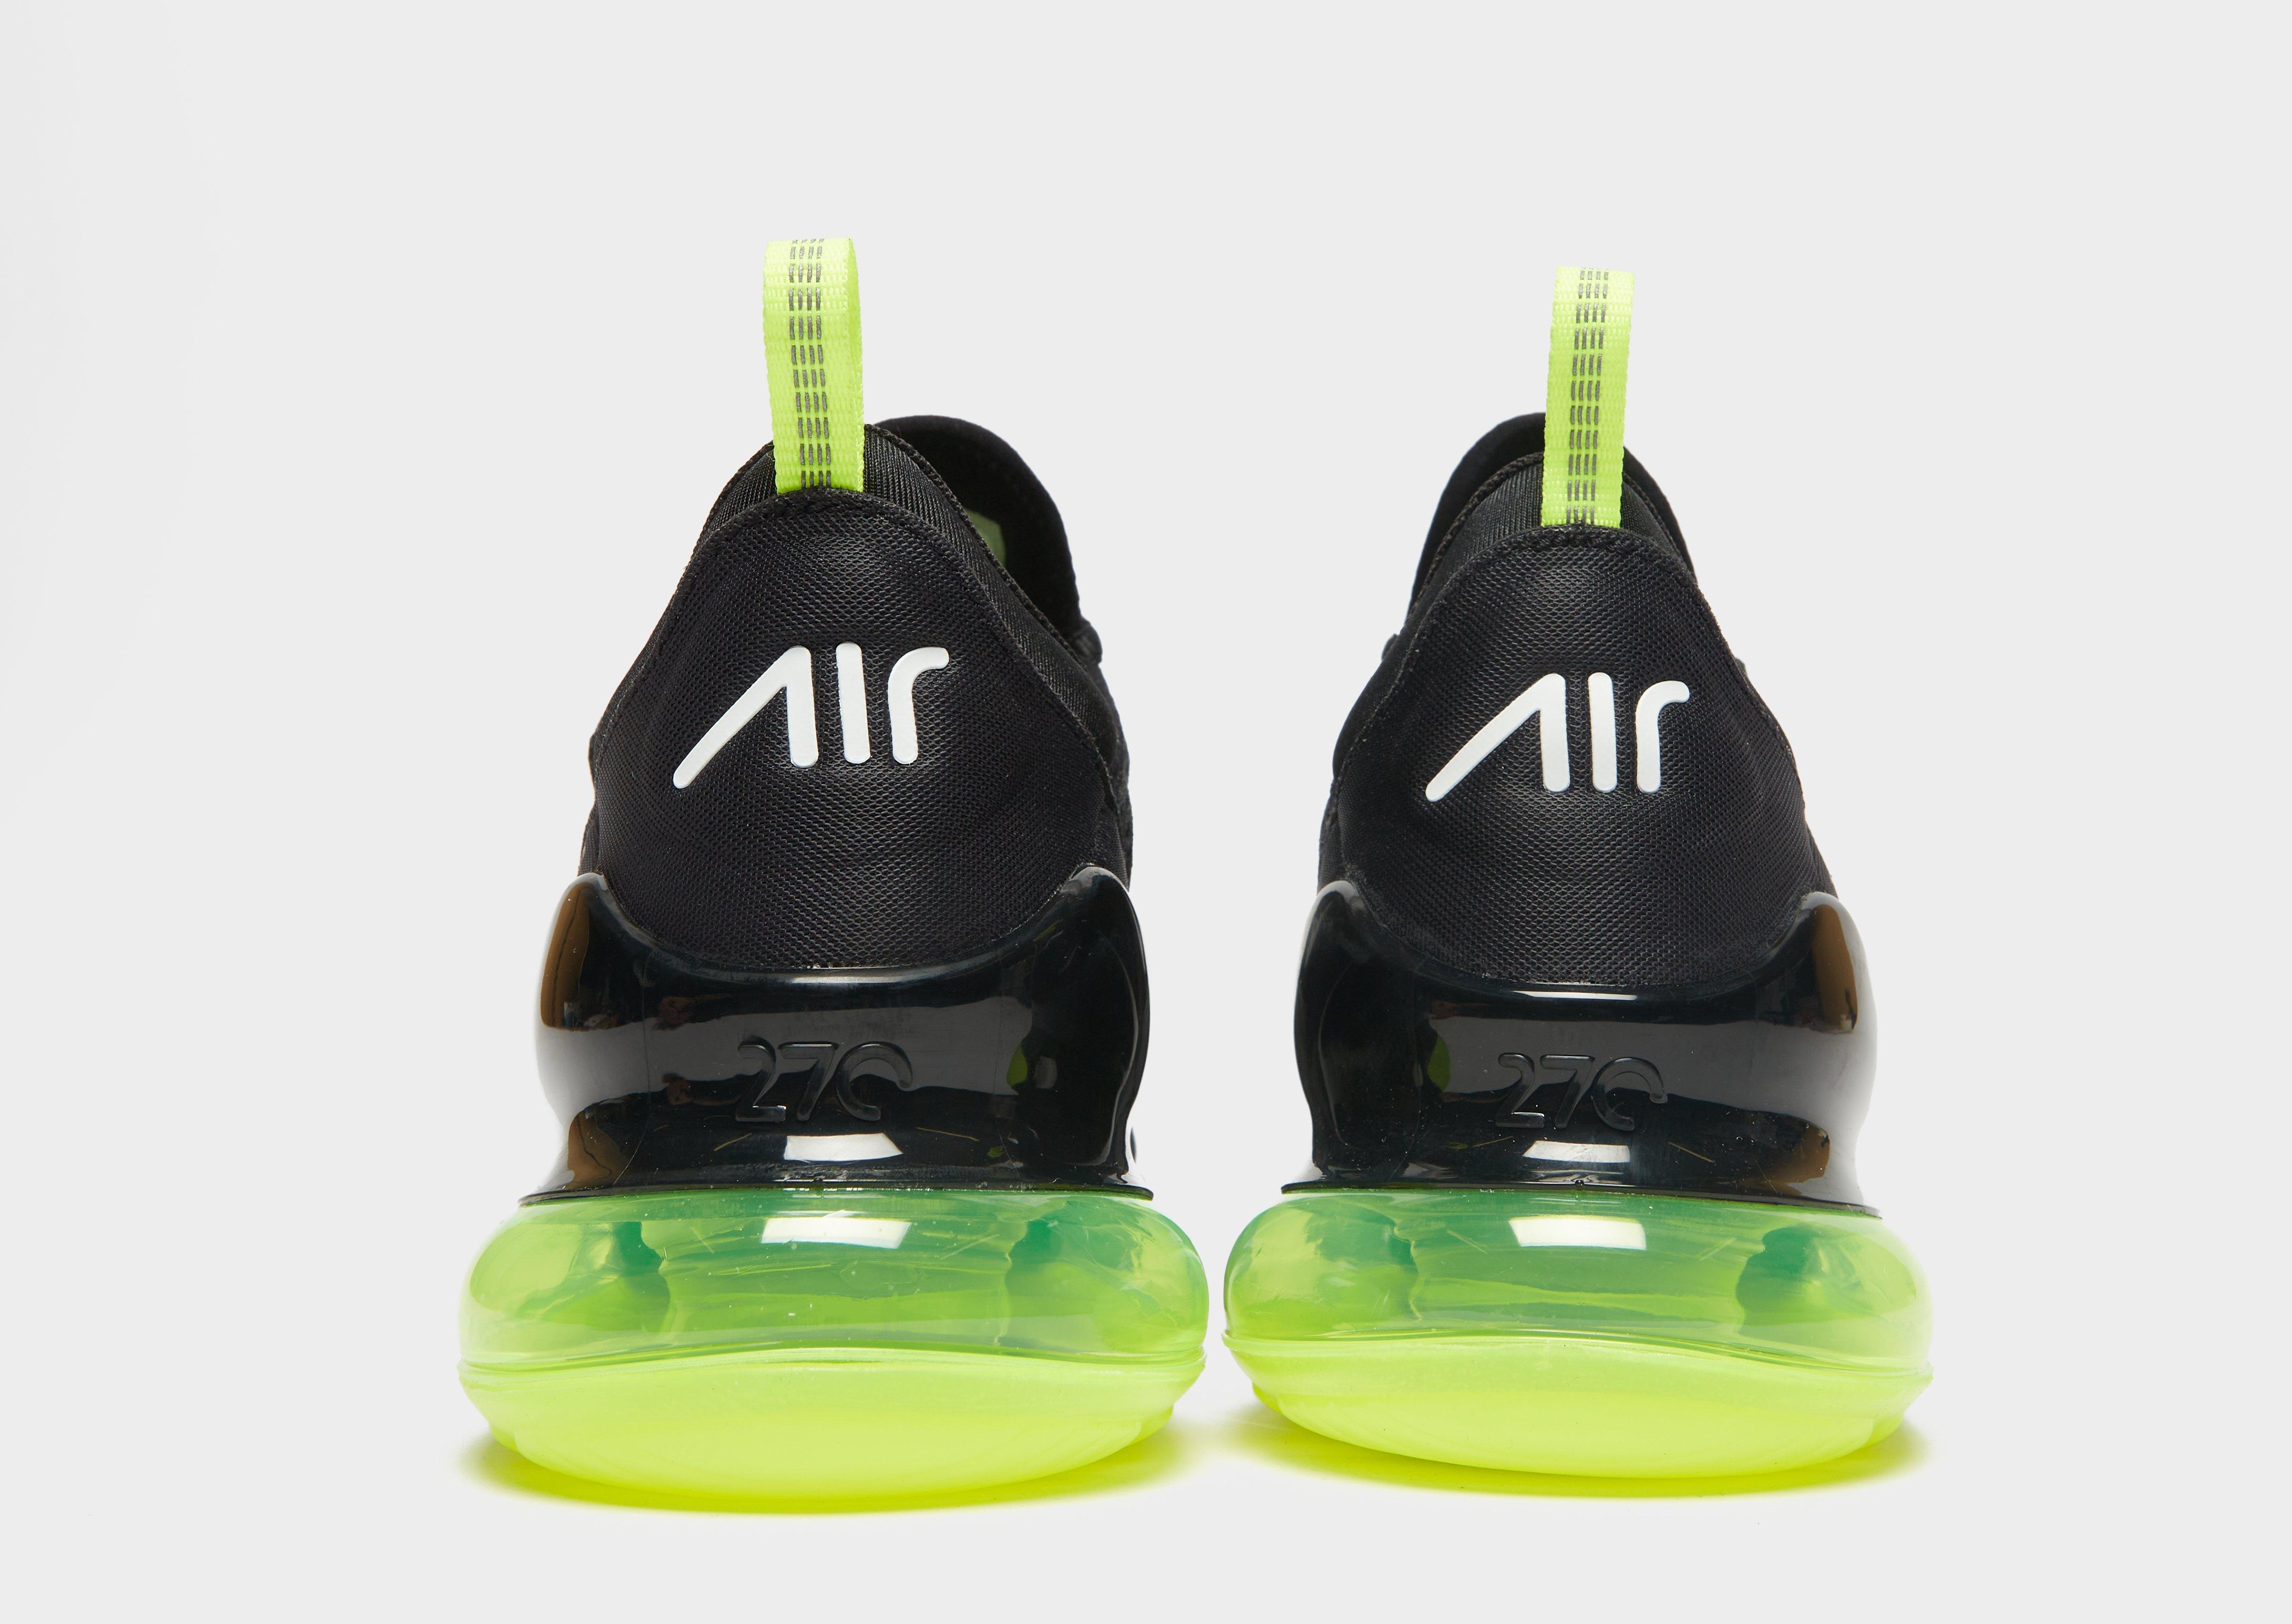 Arte pasado Microordenador Compra Nike Air Max 270 en Negro